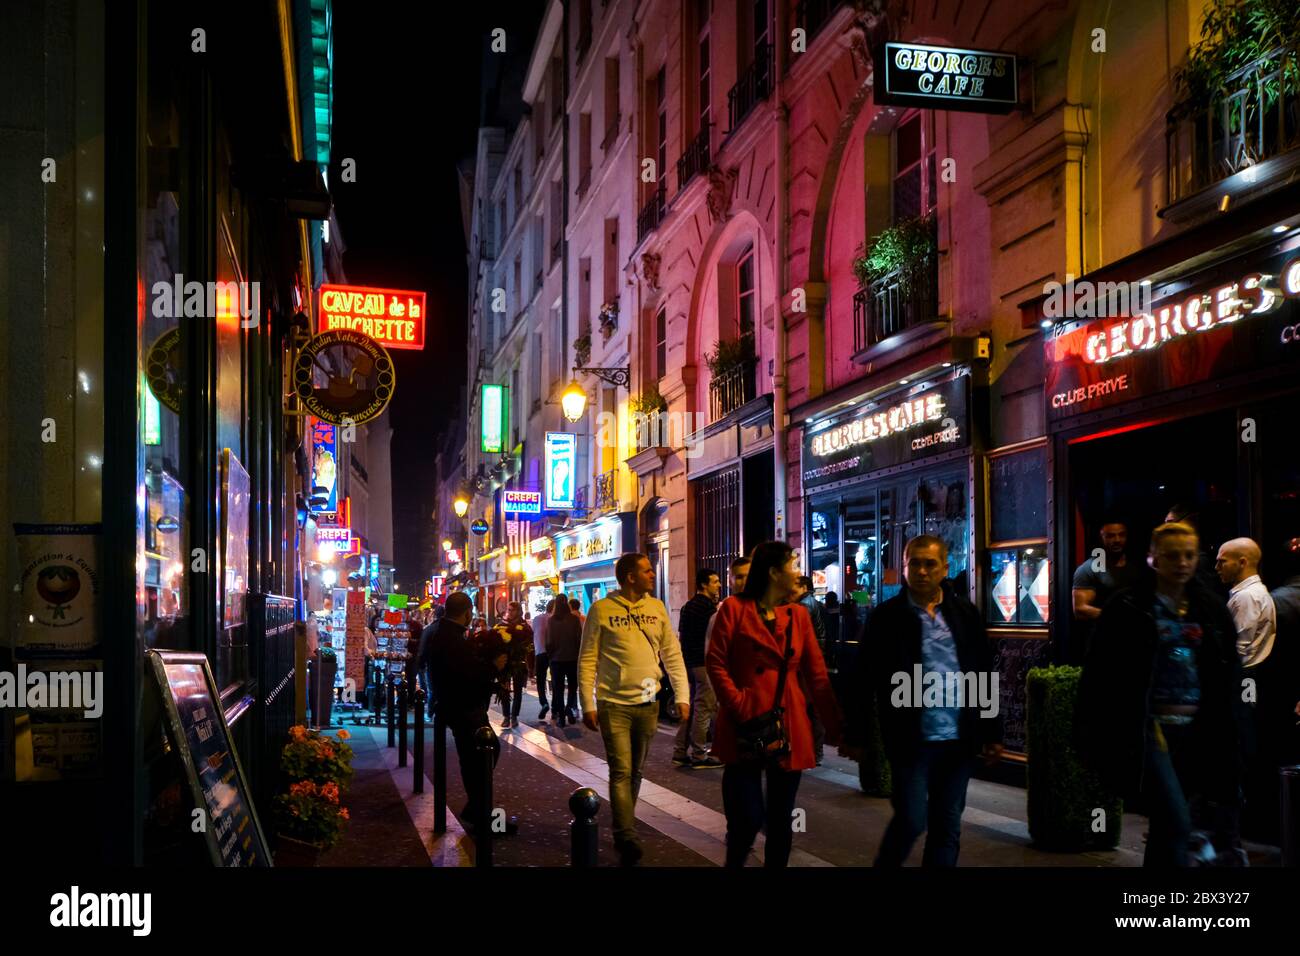 Les touristes passent devant les boutiques et les cafés en marchant dans les rues colorées éclairées au néon tard dans la nuit dans le quartier Latin de Paris France Banque D'Images